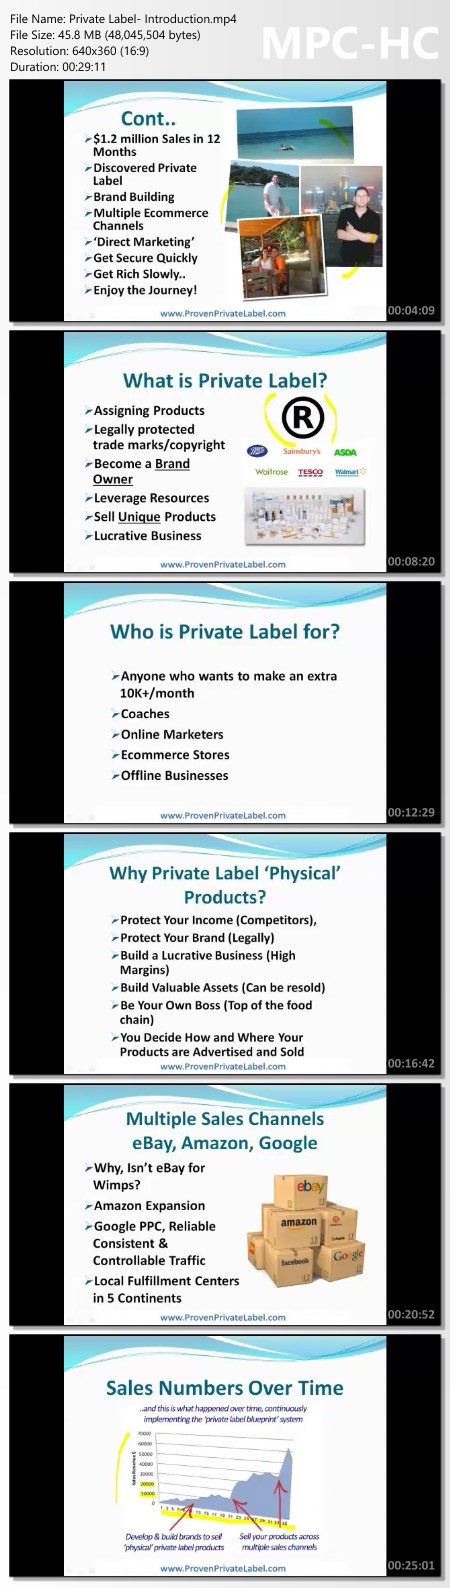 Jim Cockrum - Proven Private Label Course